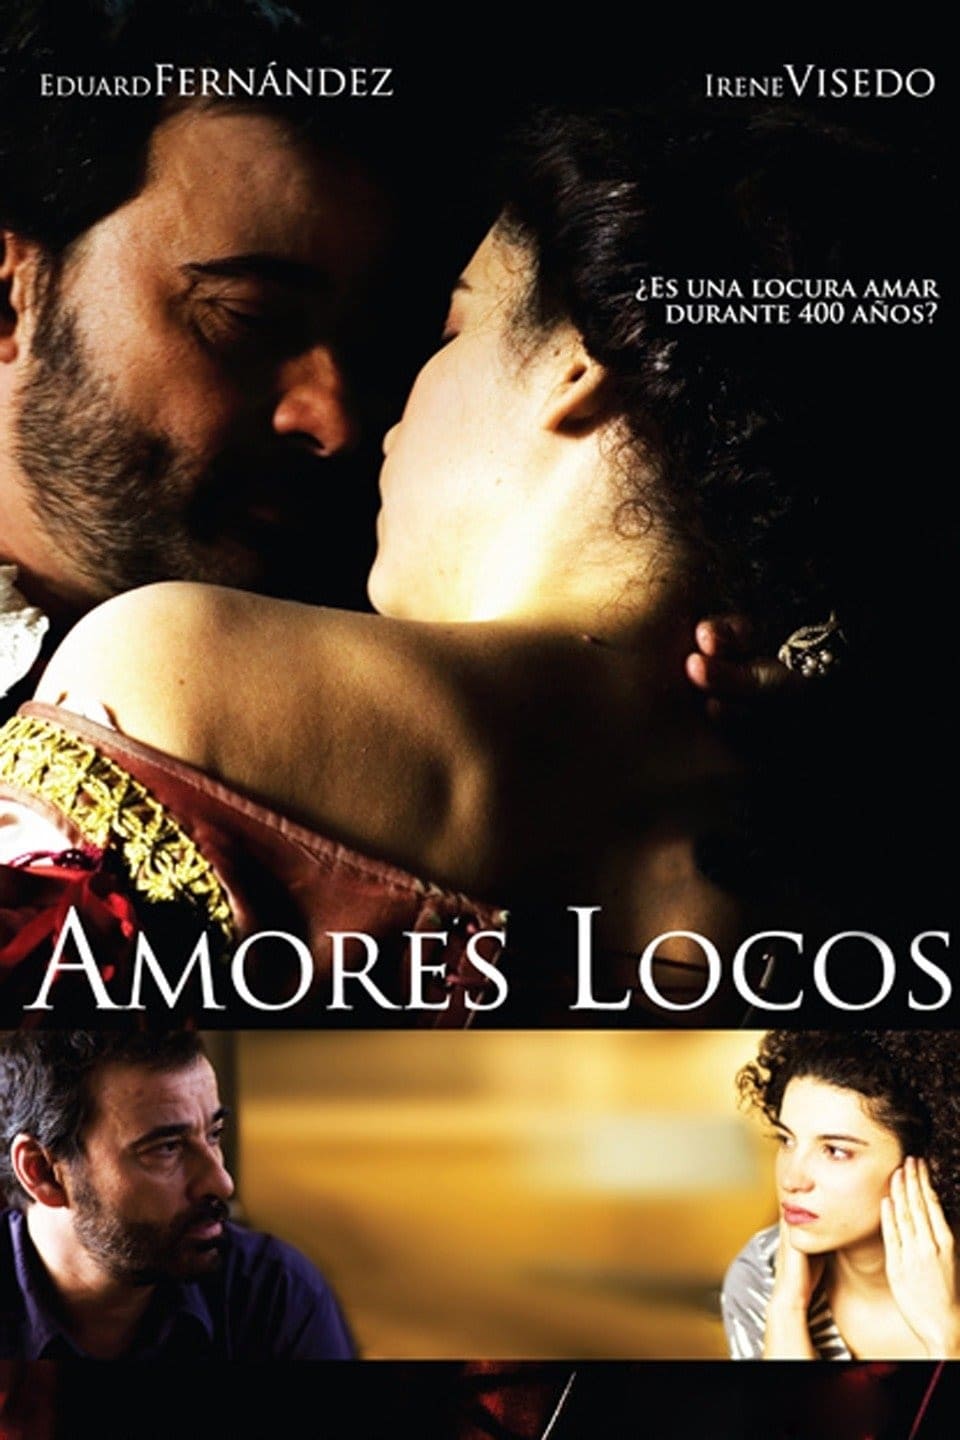 Amores locos (2009)